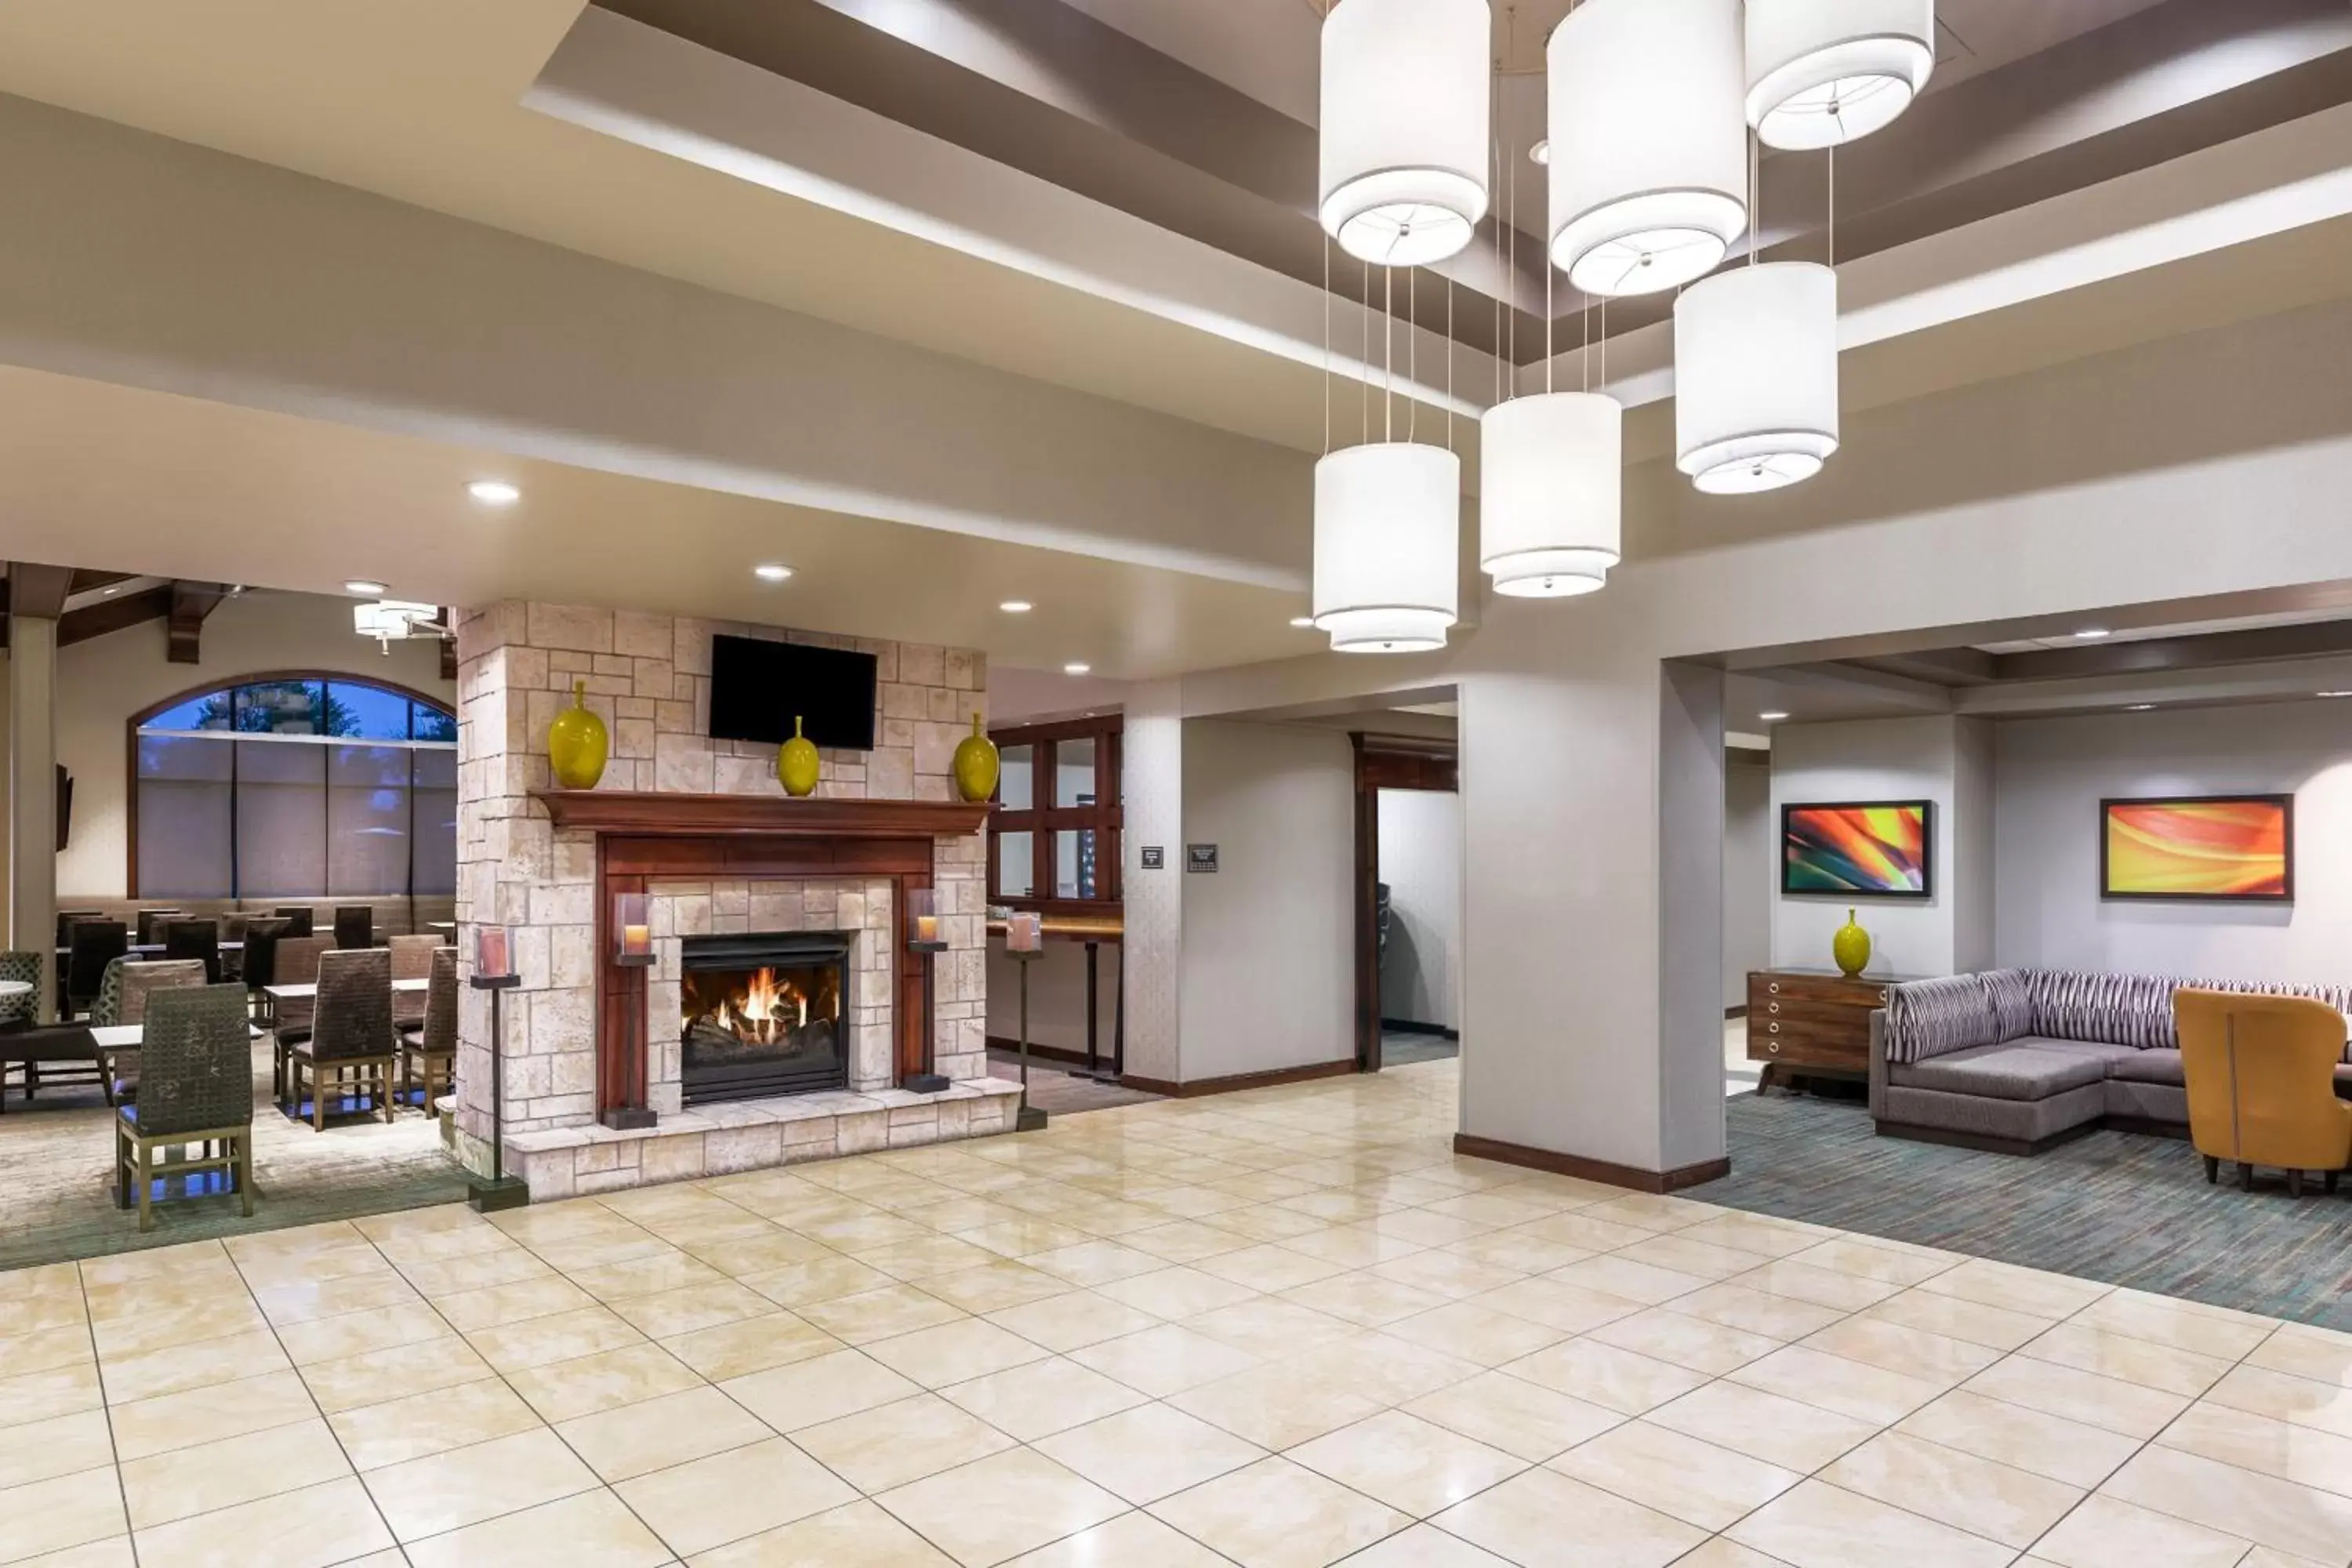 Lobby or reception in Residence Inn by Marriott Oklahoma City Downtown/Bricktown